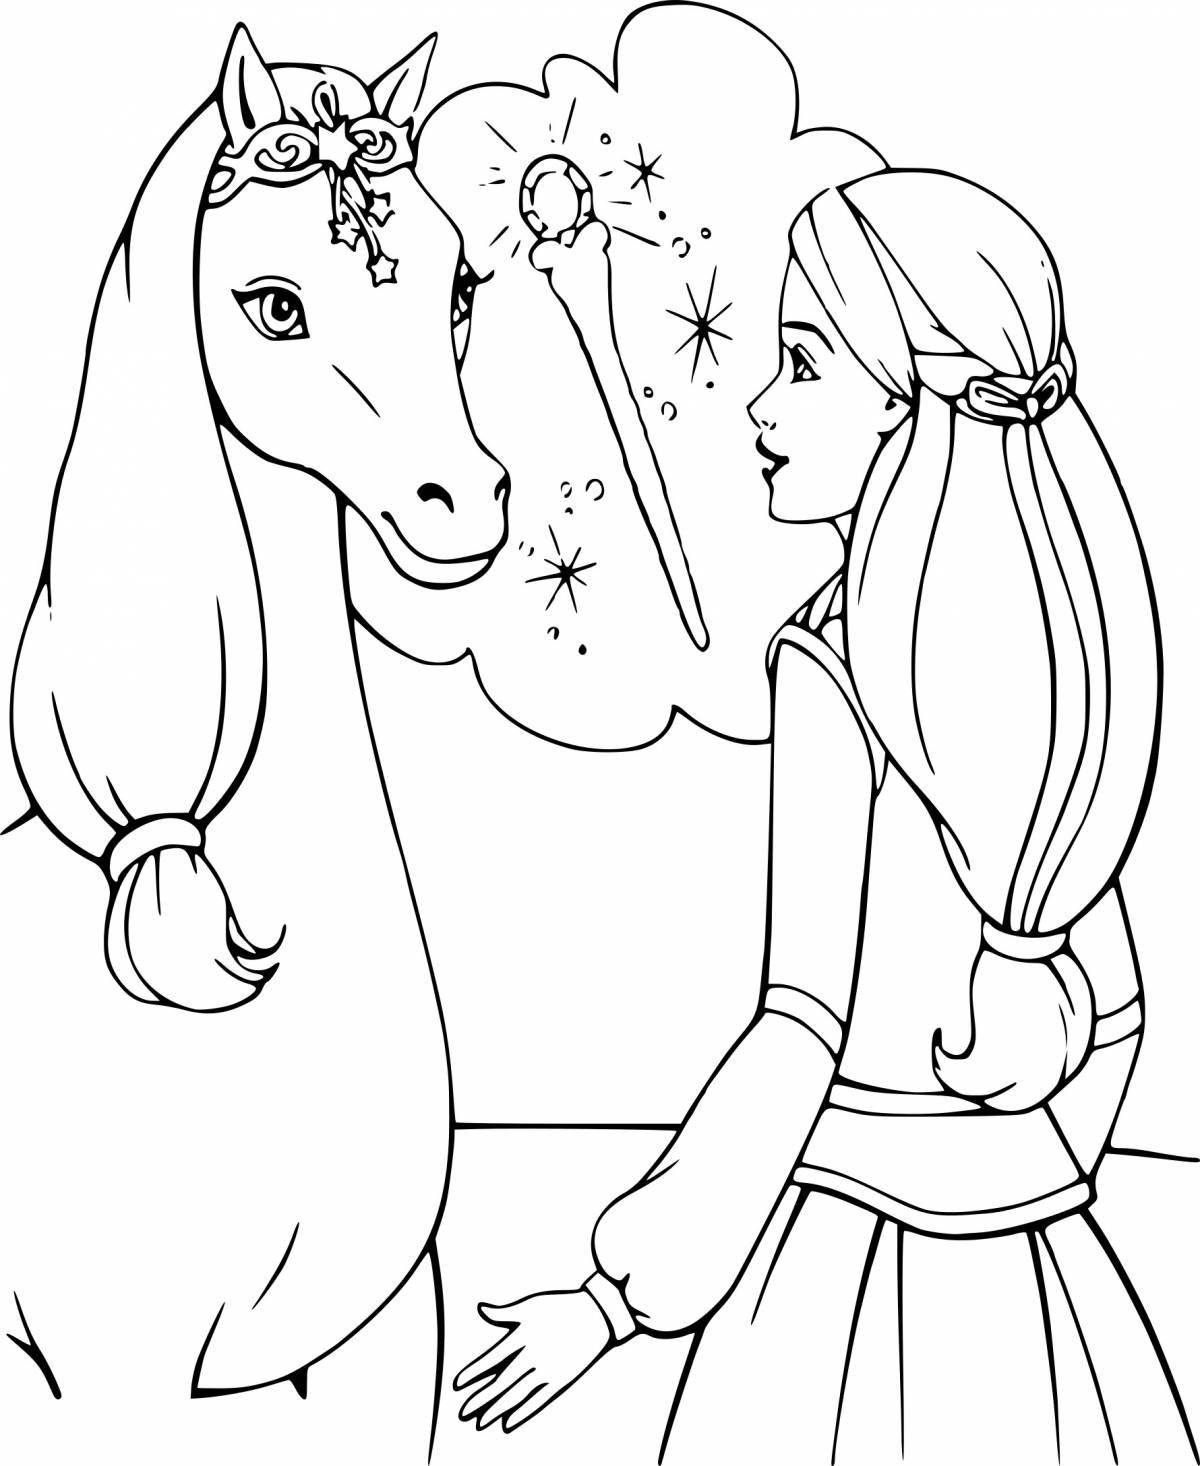 Horse and princess #3